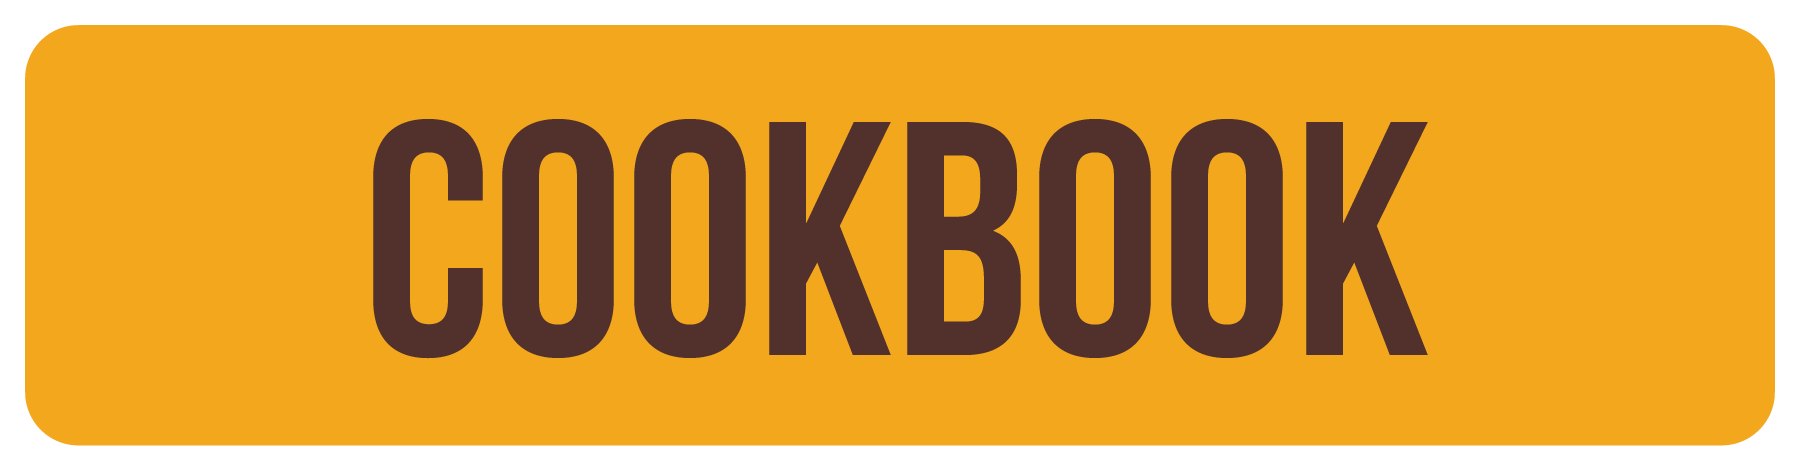 SHOP FOR_COOKBOOK.png